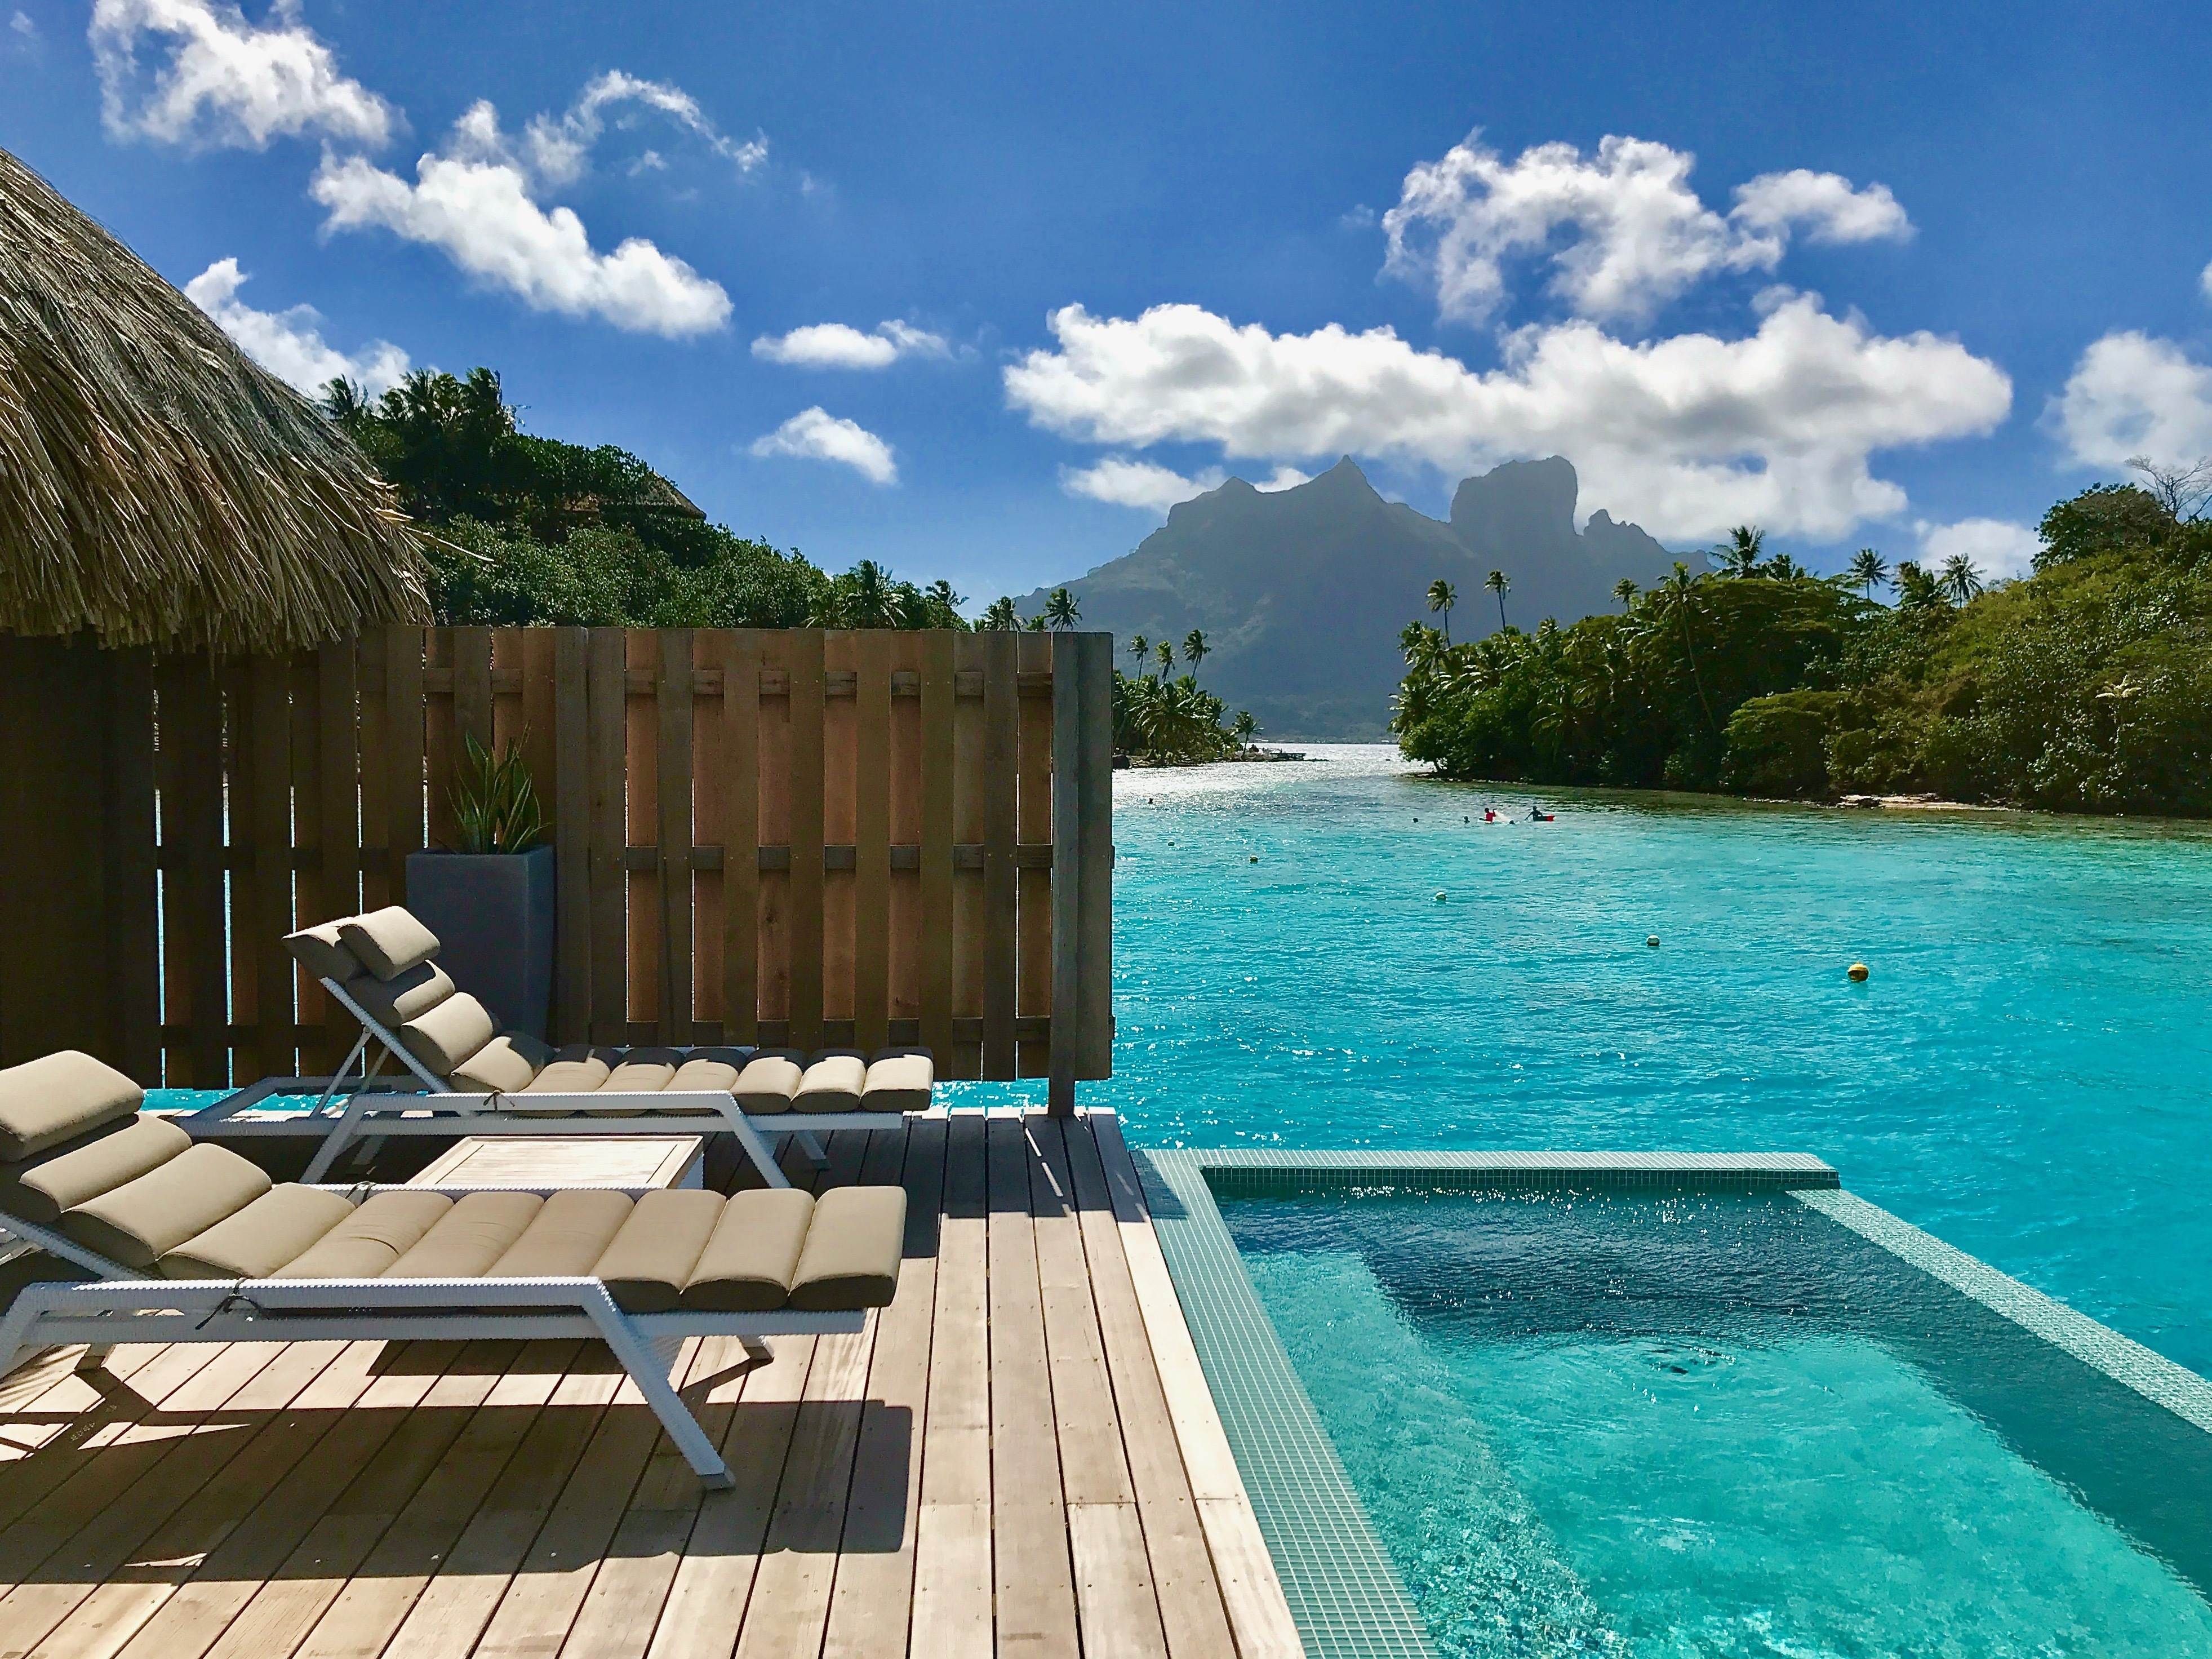 Ein Sonnendeck mit einem Pool mit Blick auf den Strand | Quelle: Shutterstock